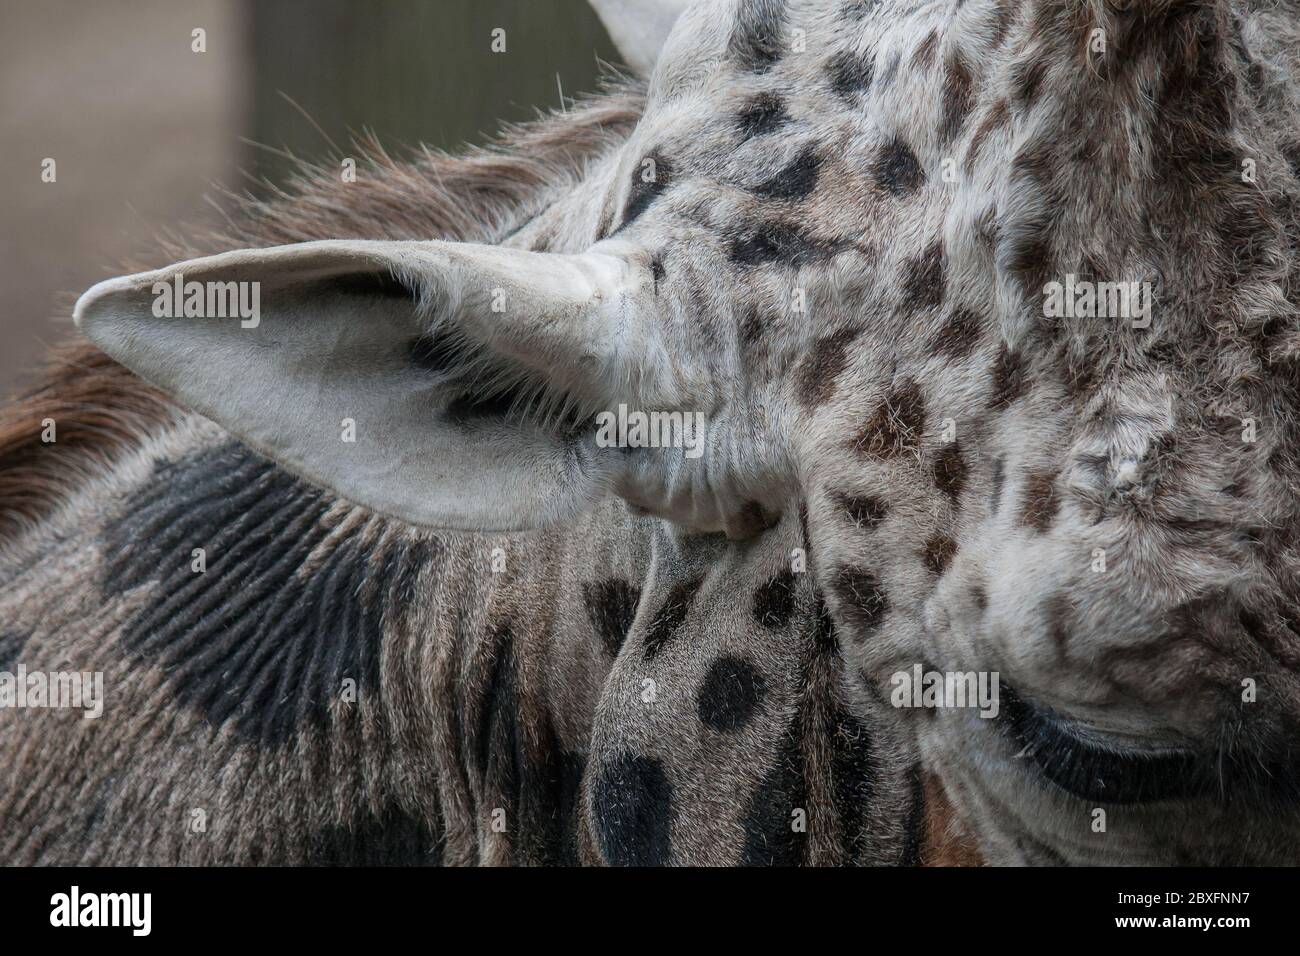 Portrait de l'oreille et de l'œil d'une girafe Banque D'Images